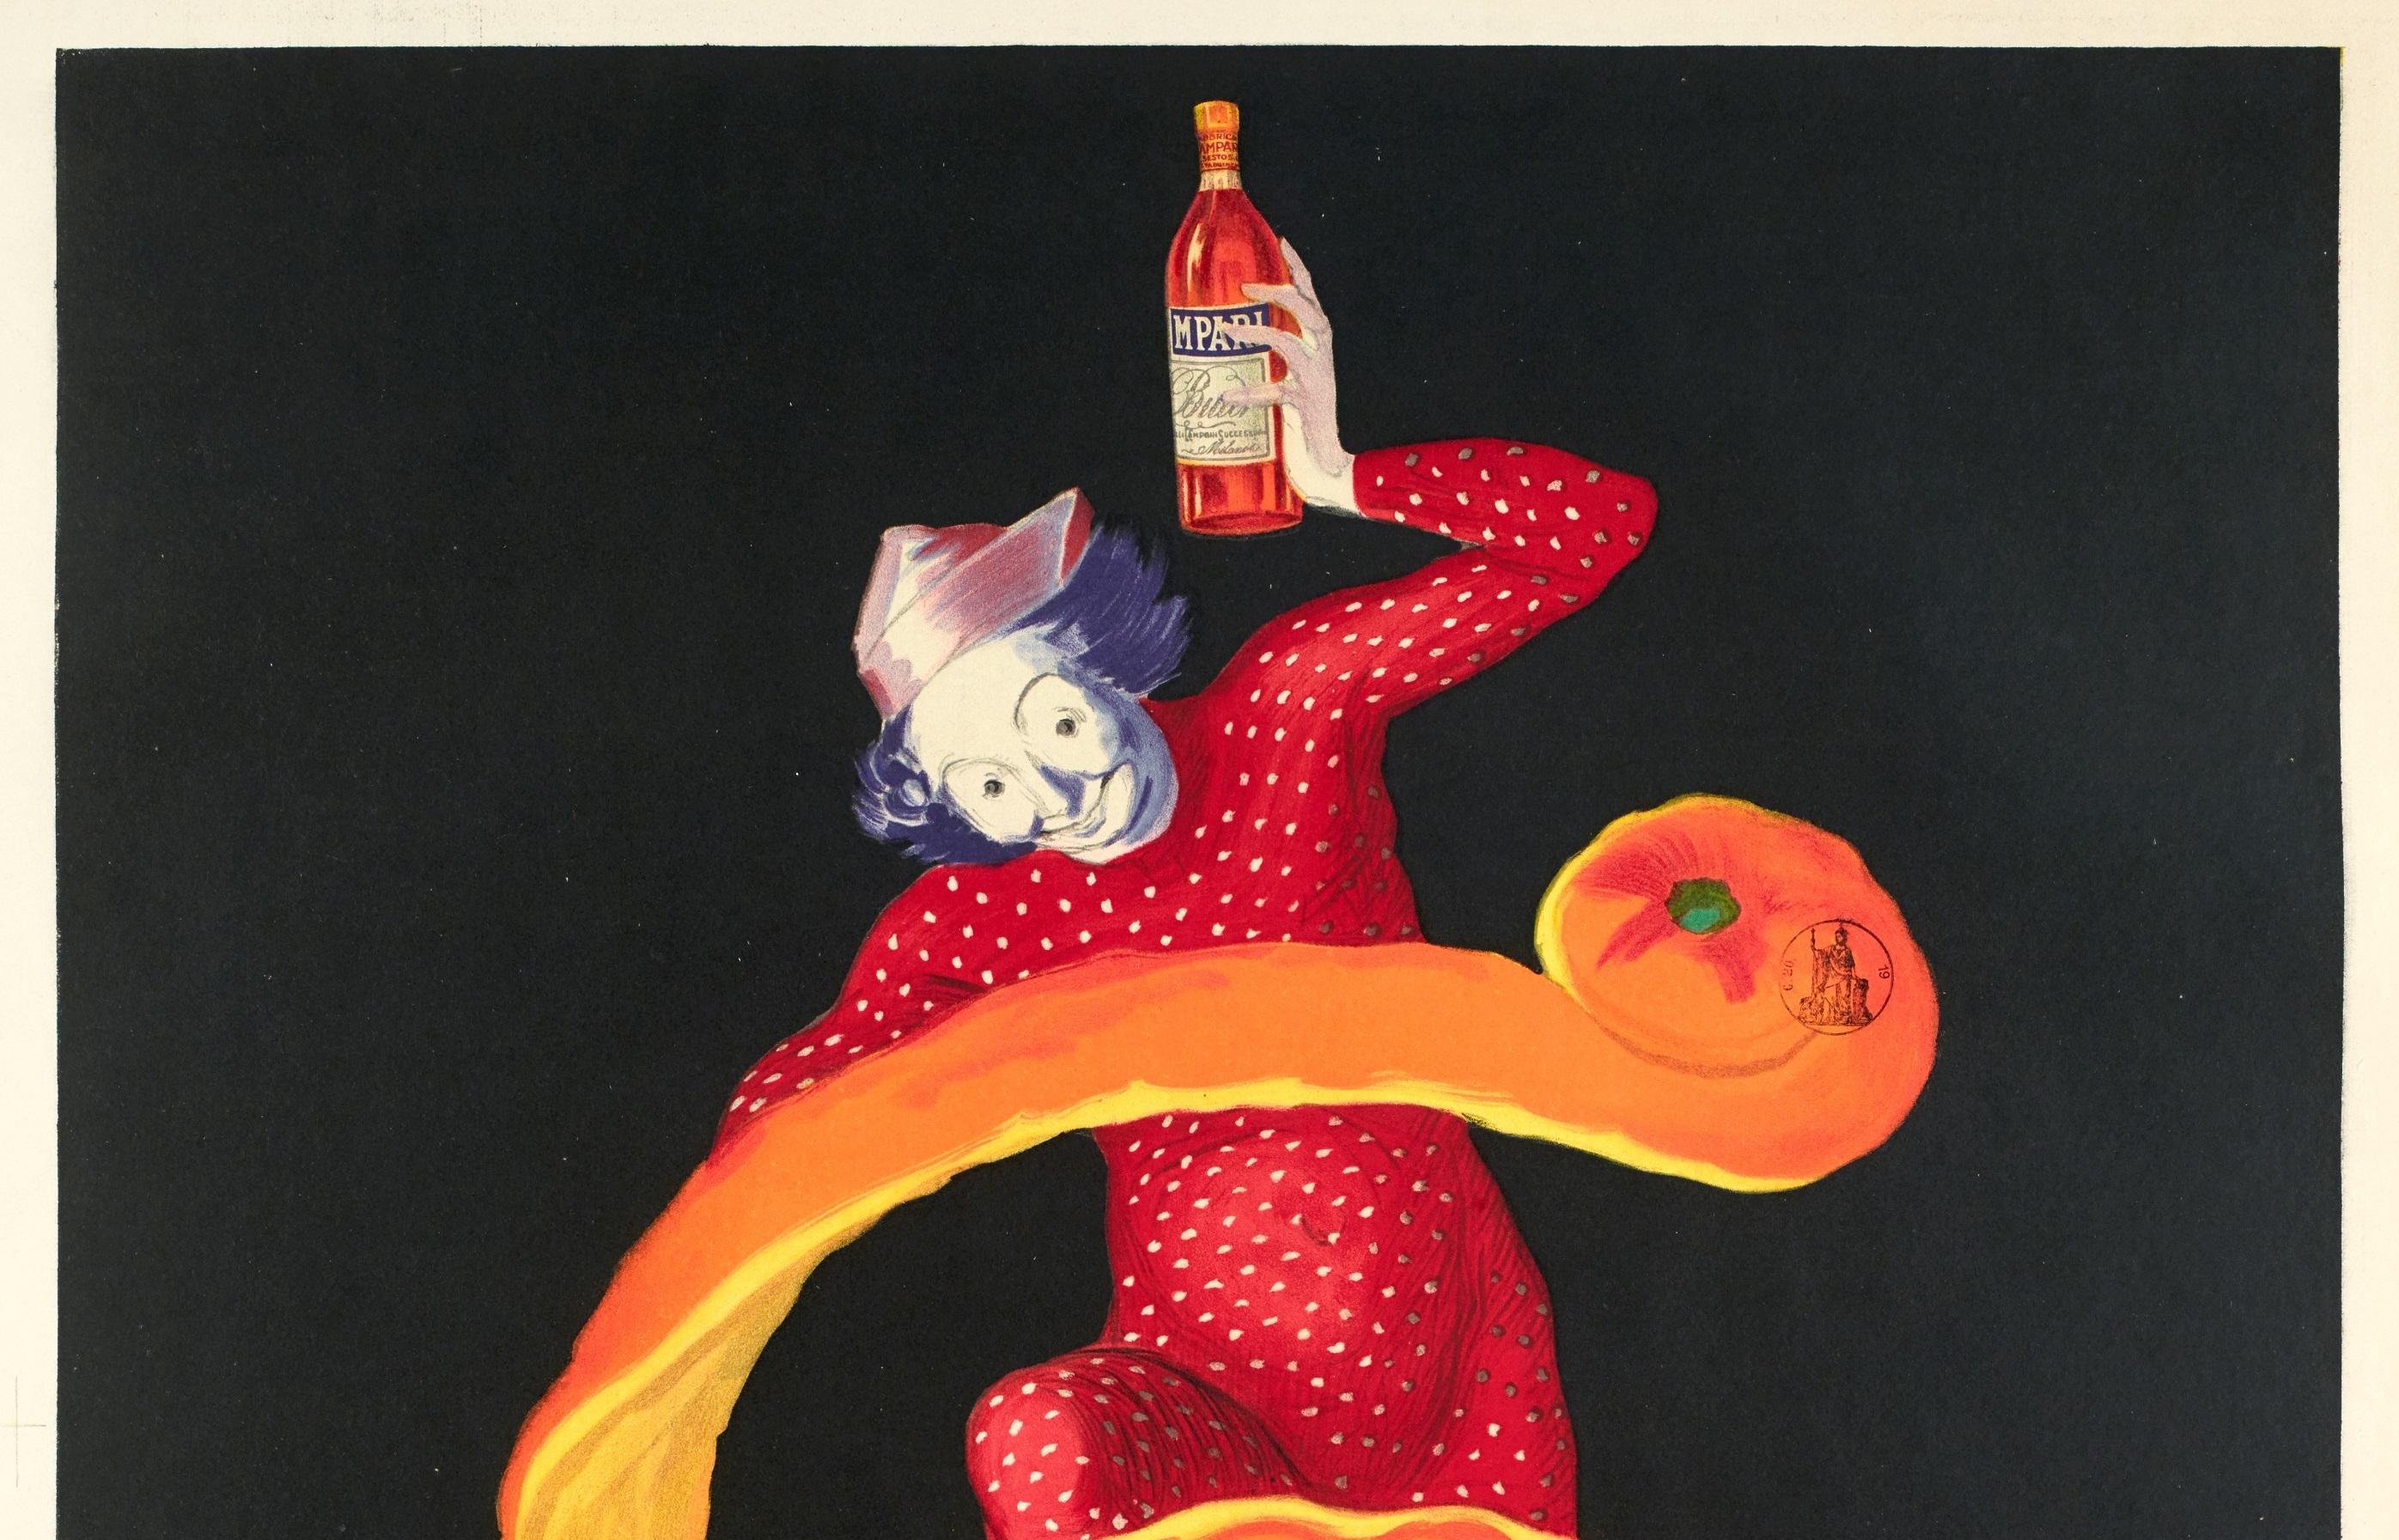 Affiche originale d'alcool vintage pour Bitter Campari datant de 1921 par Leonetto Cappiello.

Artistics : Leonetto Cappiello (1875 - 1942) 
Titre : Campari amer
Date : 1921
Taille : 26.8 x 38.6 in / 68 x 98 cm
Imprimeur : Les nouvelles